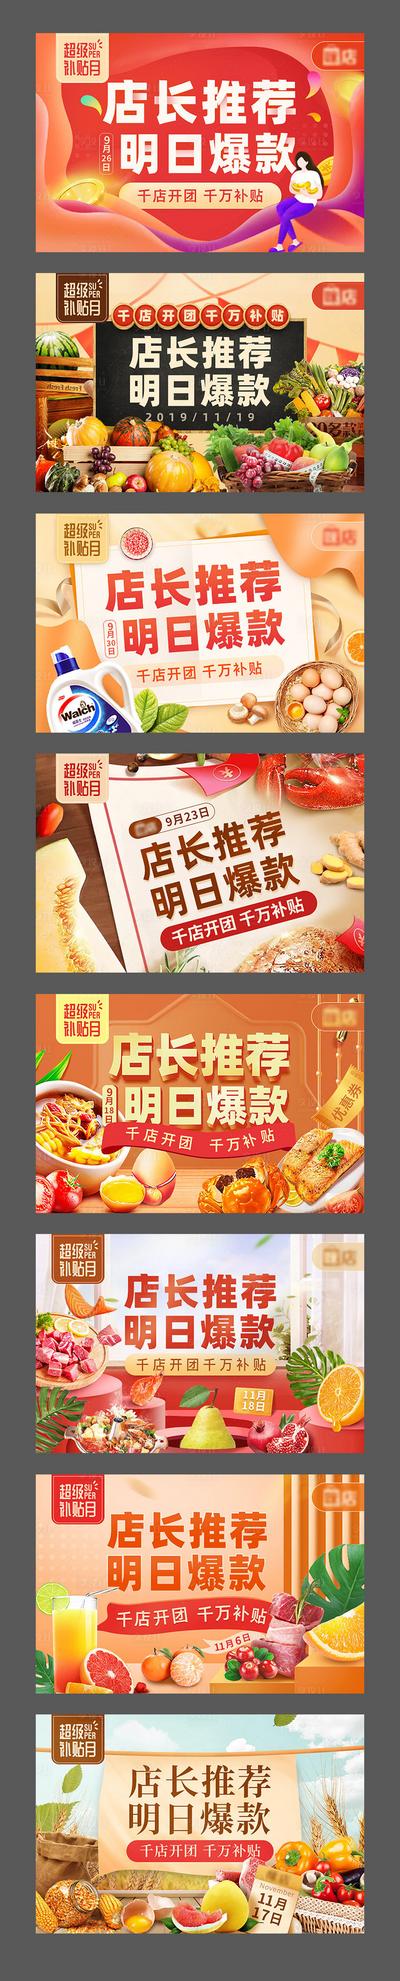 南门网 电商海报 淘宝海报 banner 生鲜 水果 食材 推荐 爆款 促销